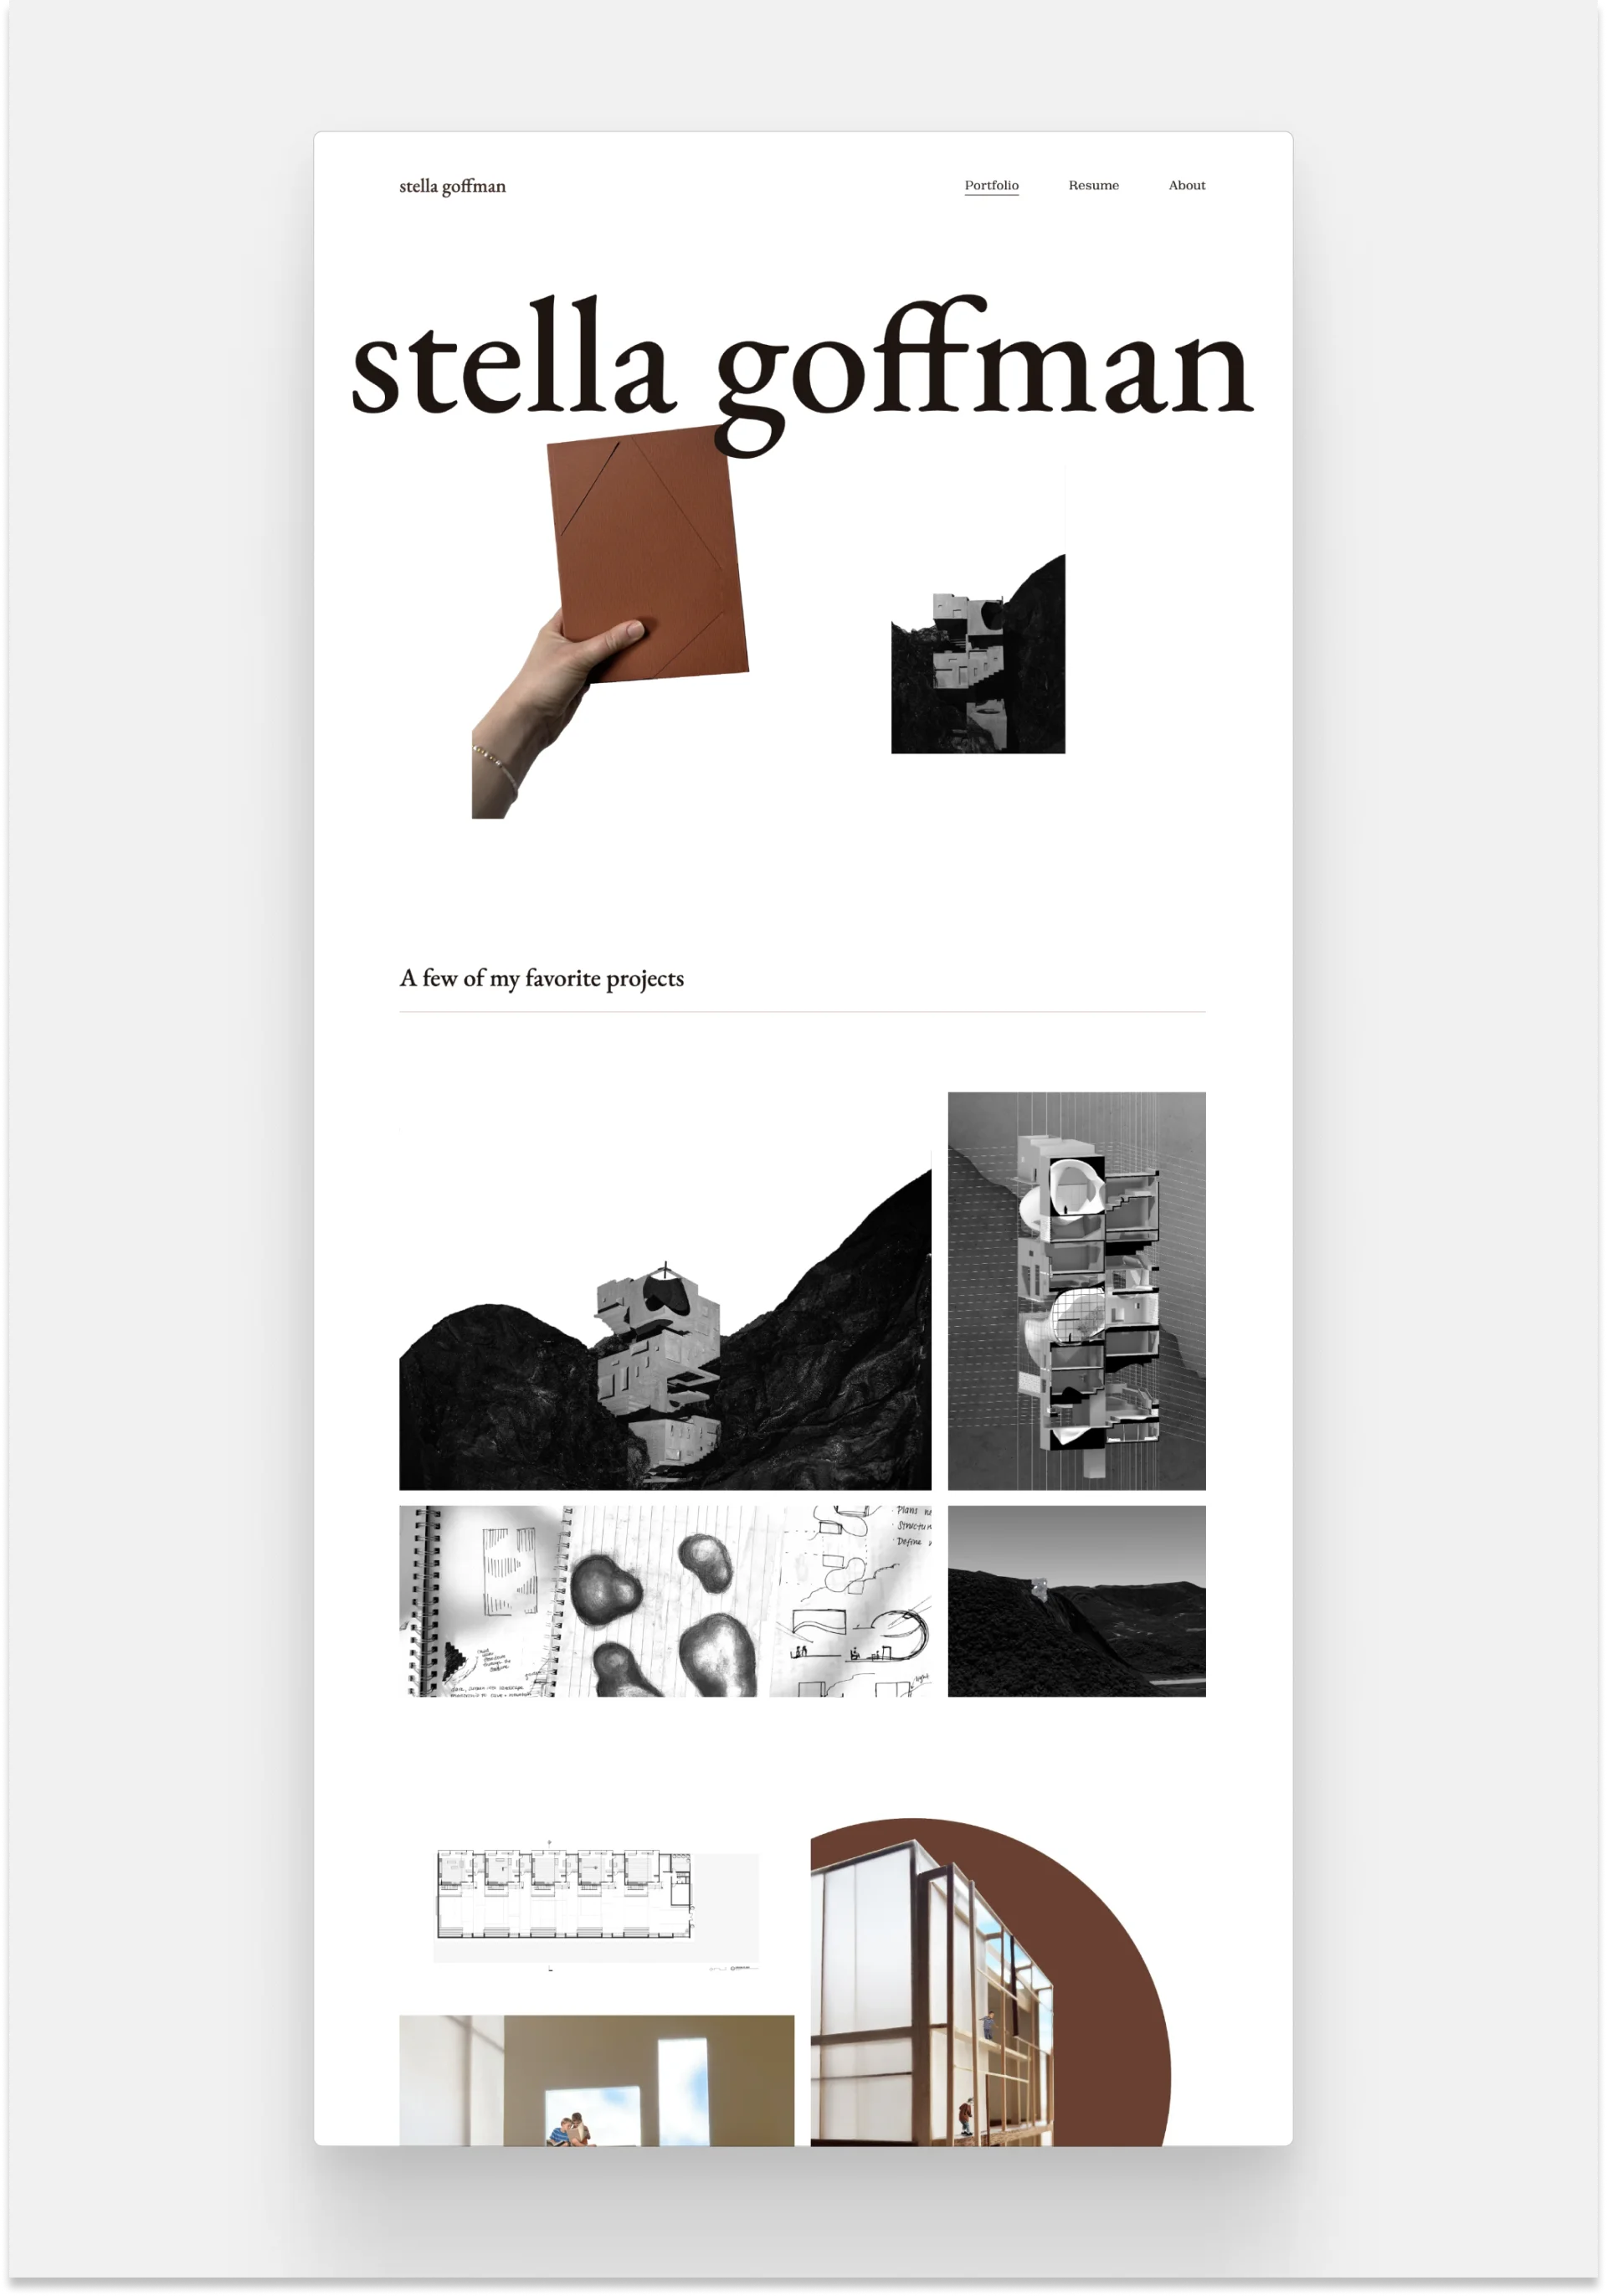 Screenshot of Stella Goffman's architecture website